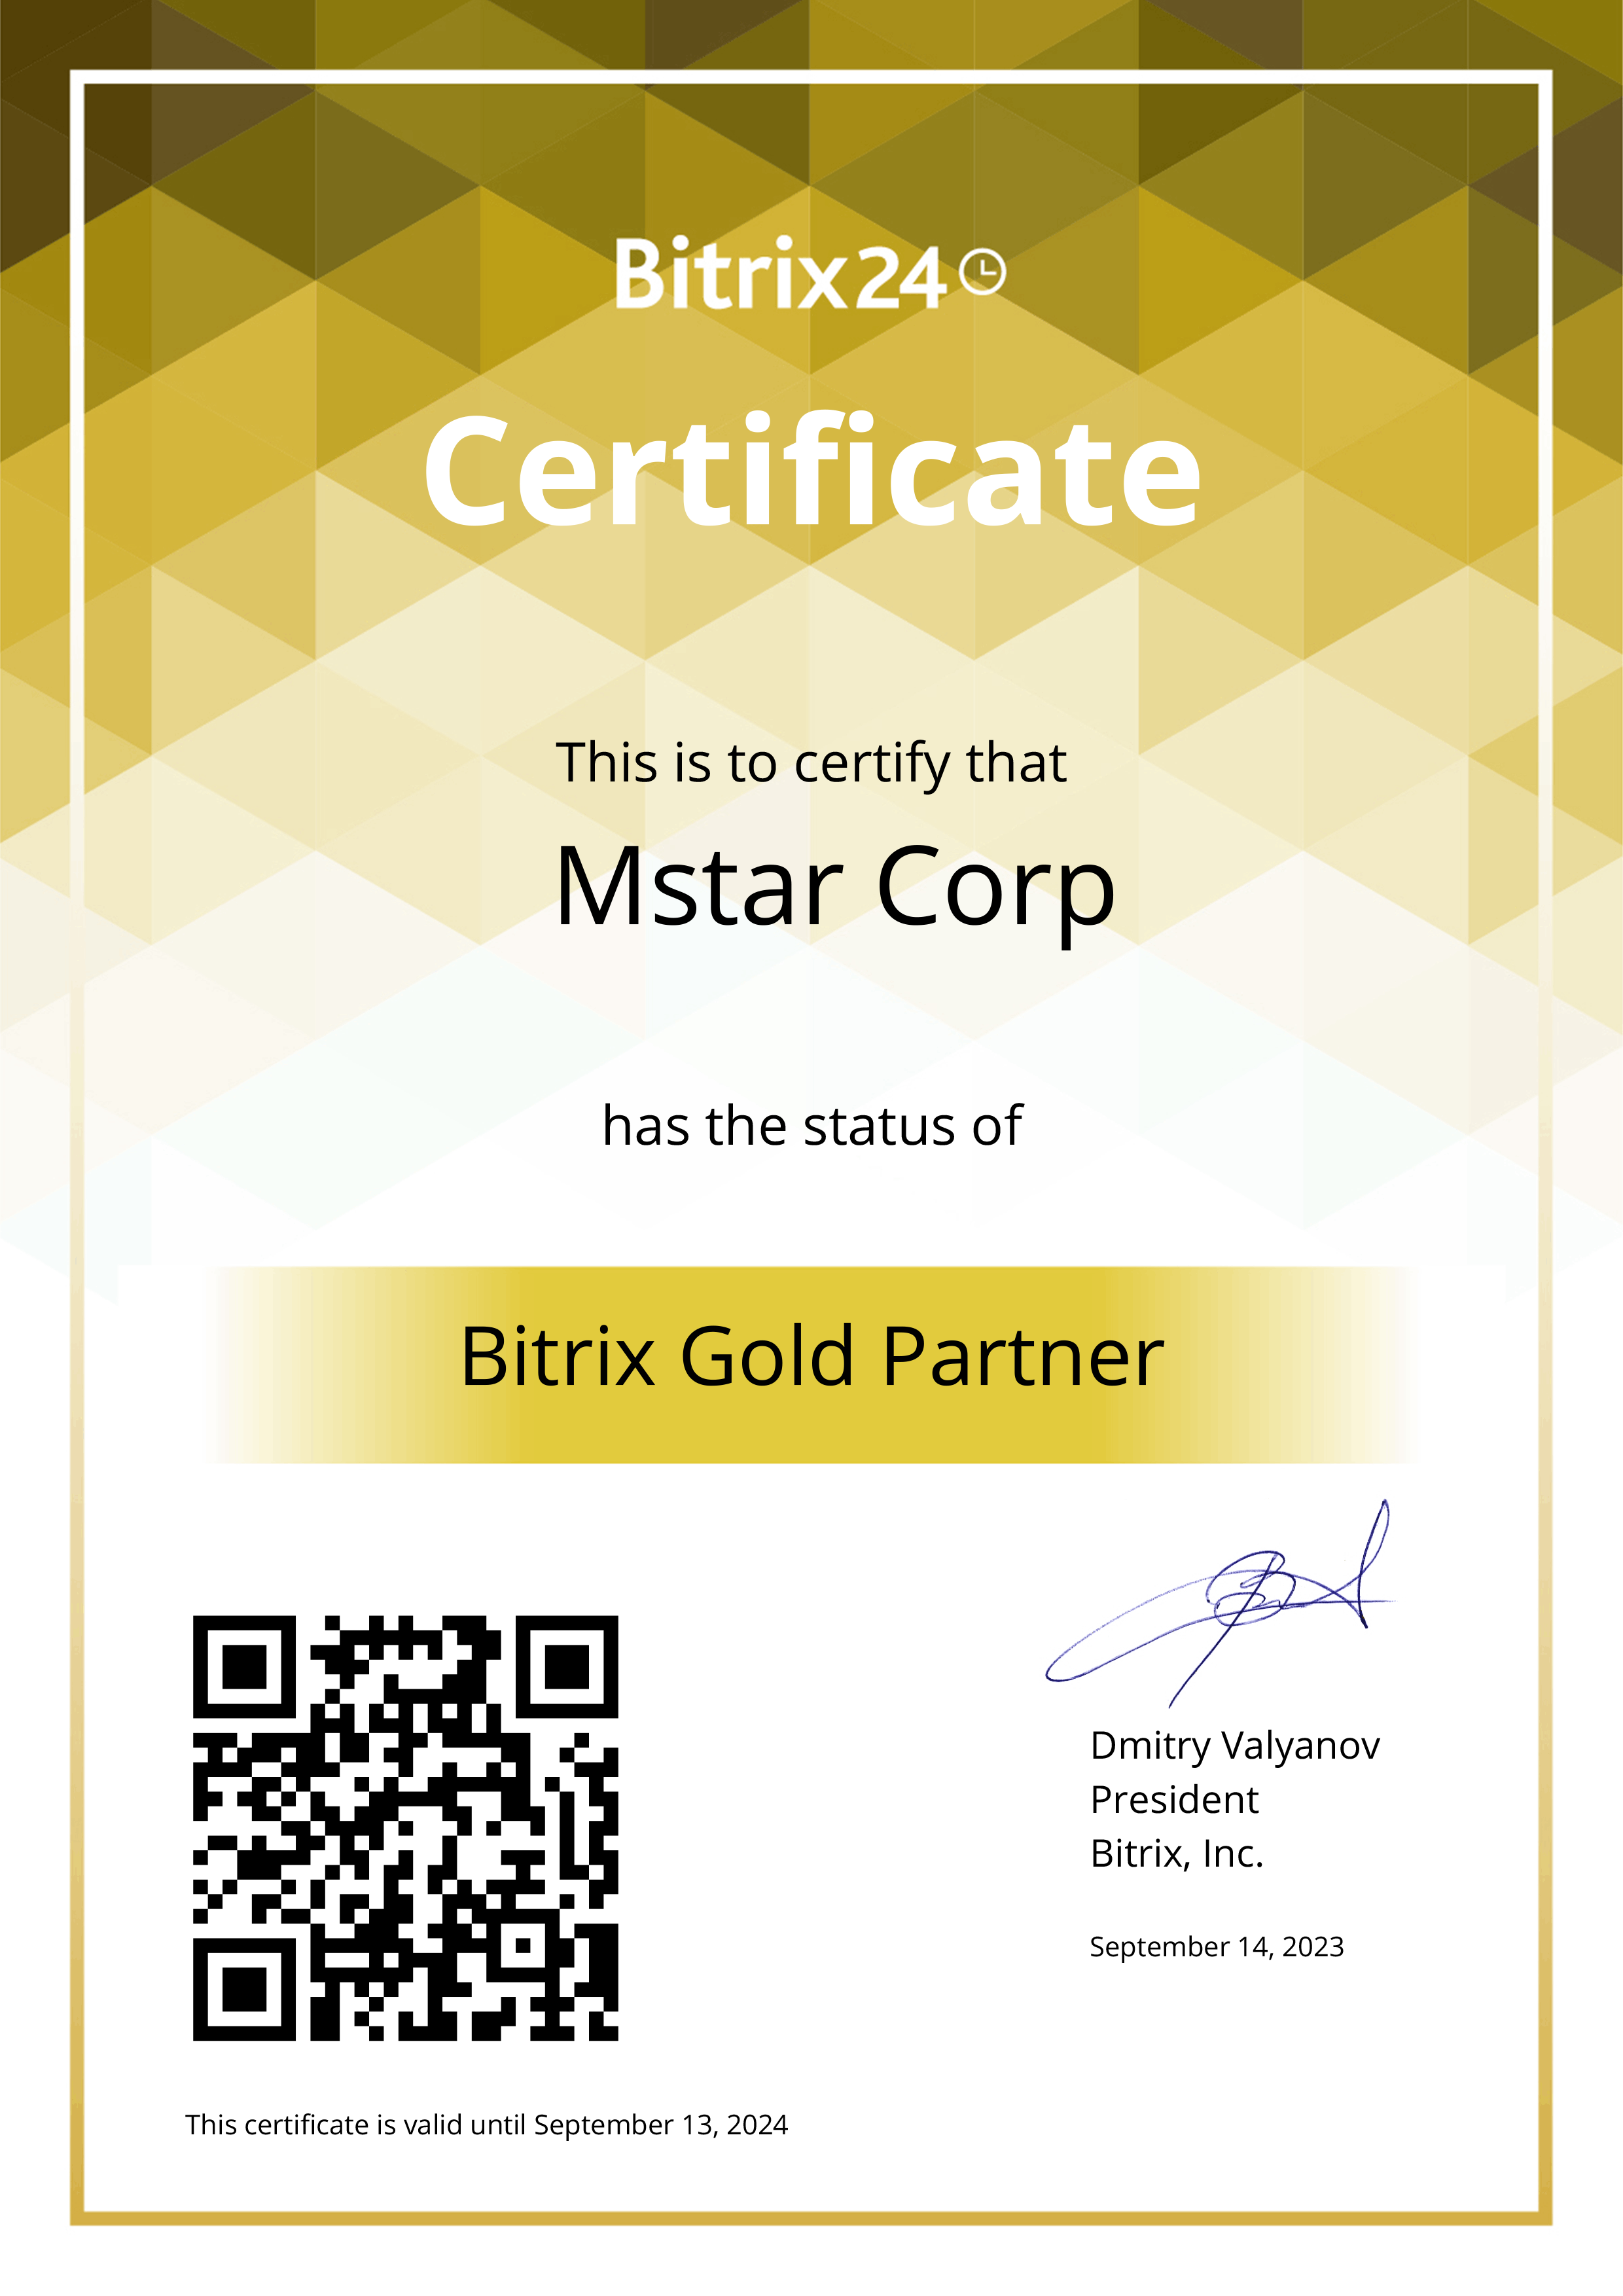 Mstar Corp - Bitrix24 Gold Partner tại Việt Nam, đã thành công triển khai và tích hợp ChatGPT và Bitrix24